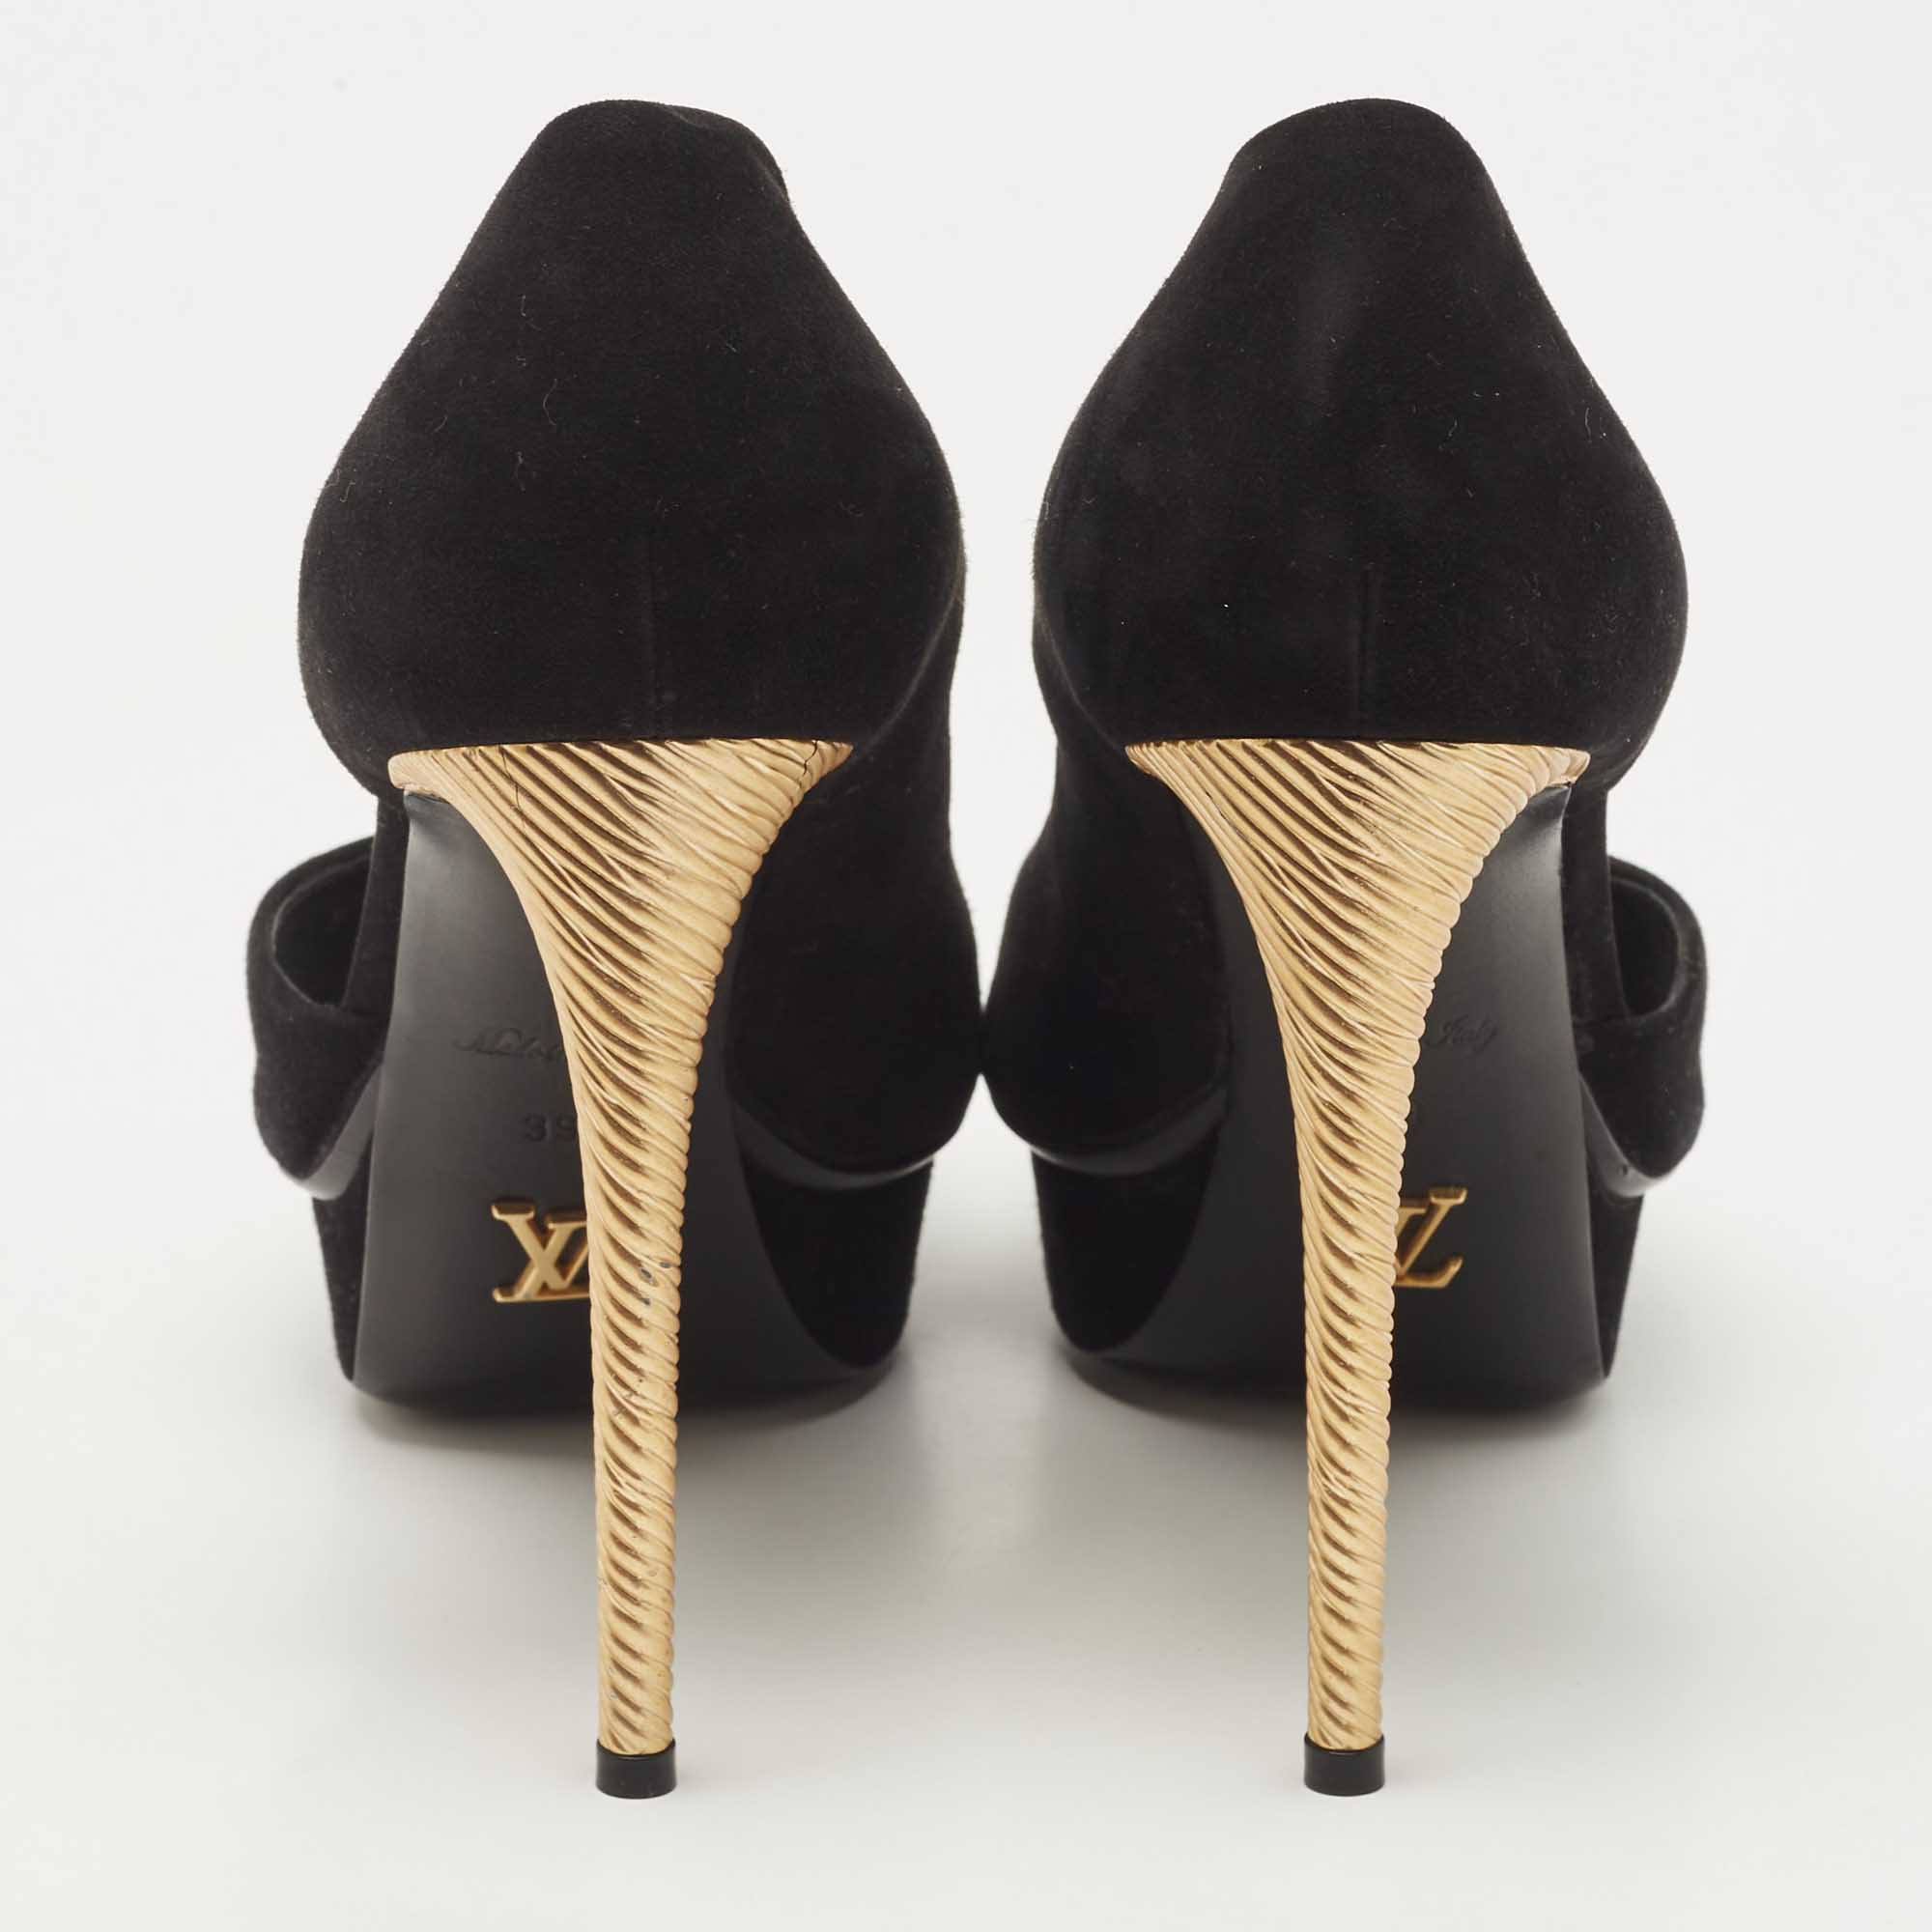 Louis Vuitton Black Suede D'orsay Peep Toe Pumps Size 39